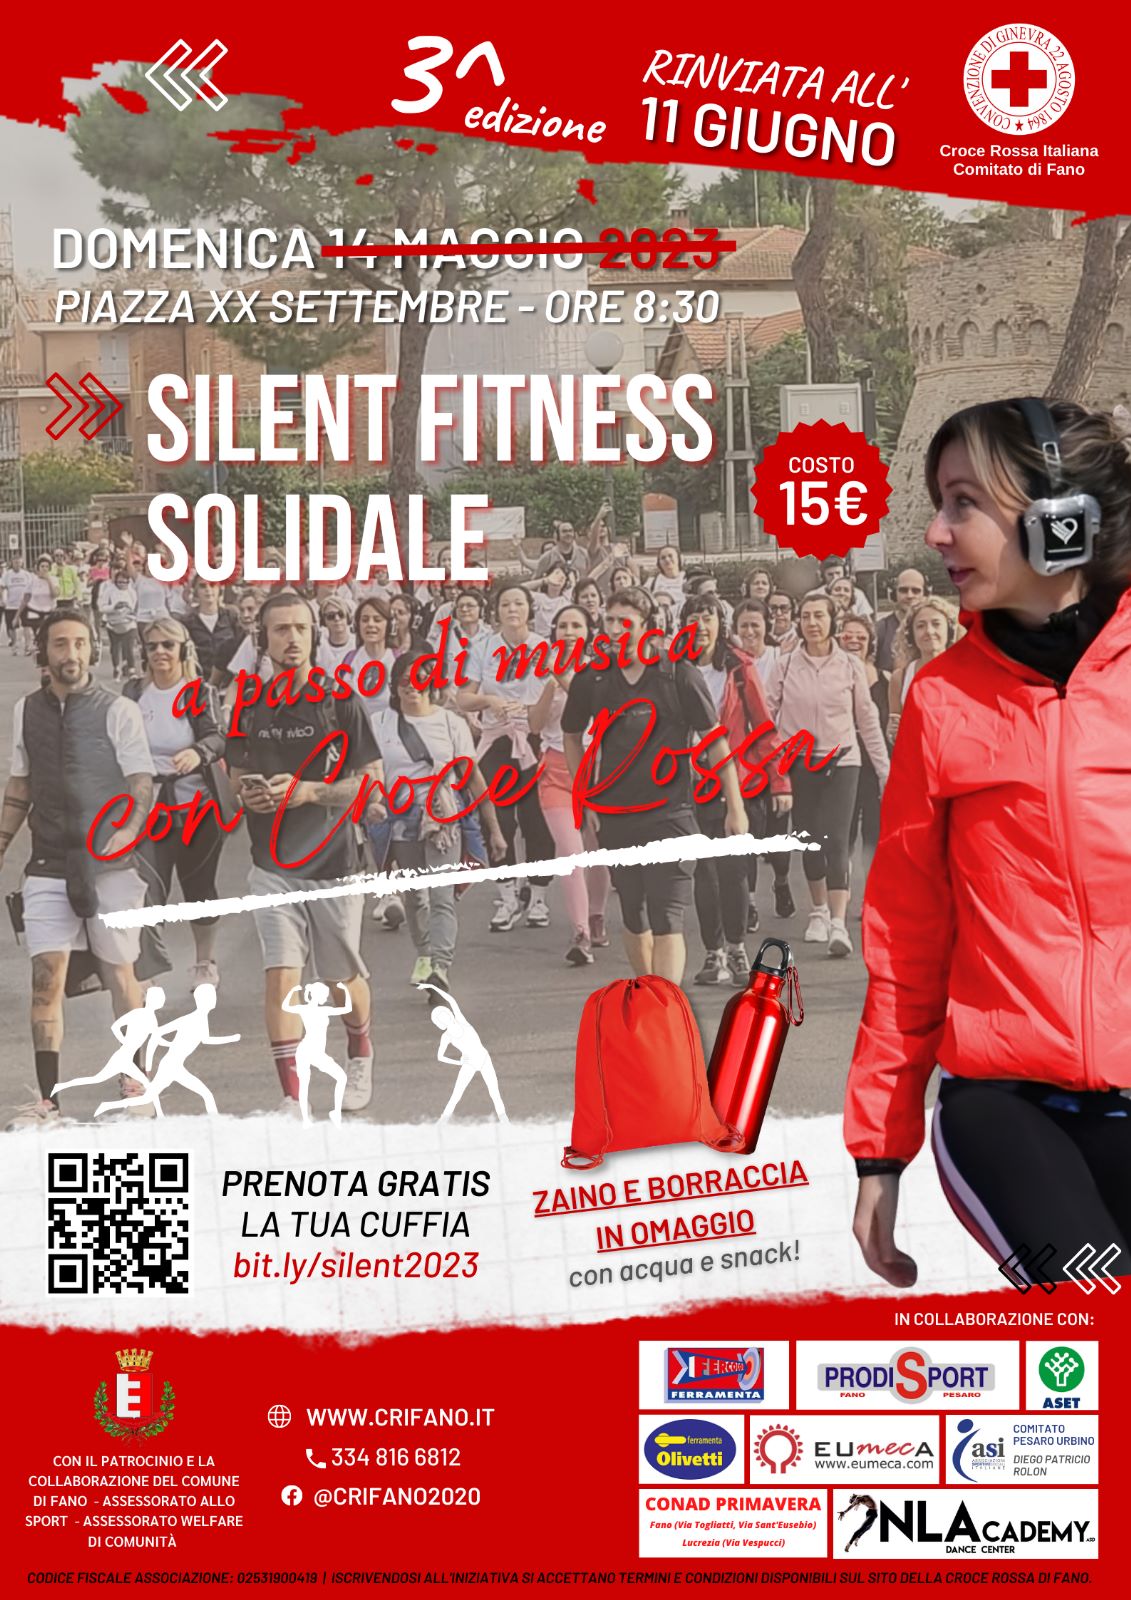 Silent Fitness Solidale – la 3ª Edizione domenica 11 giugno